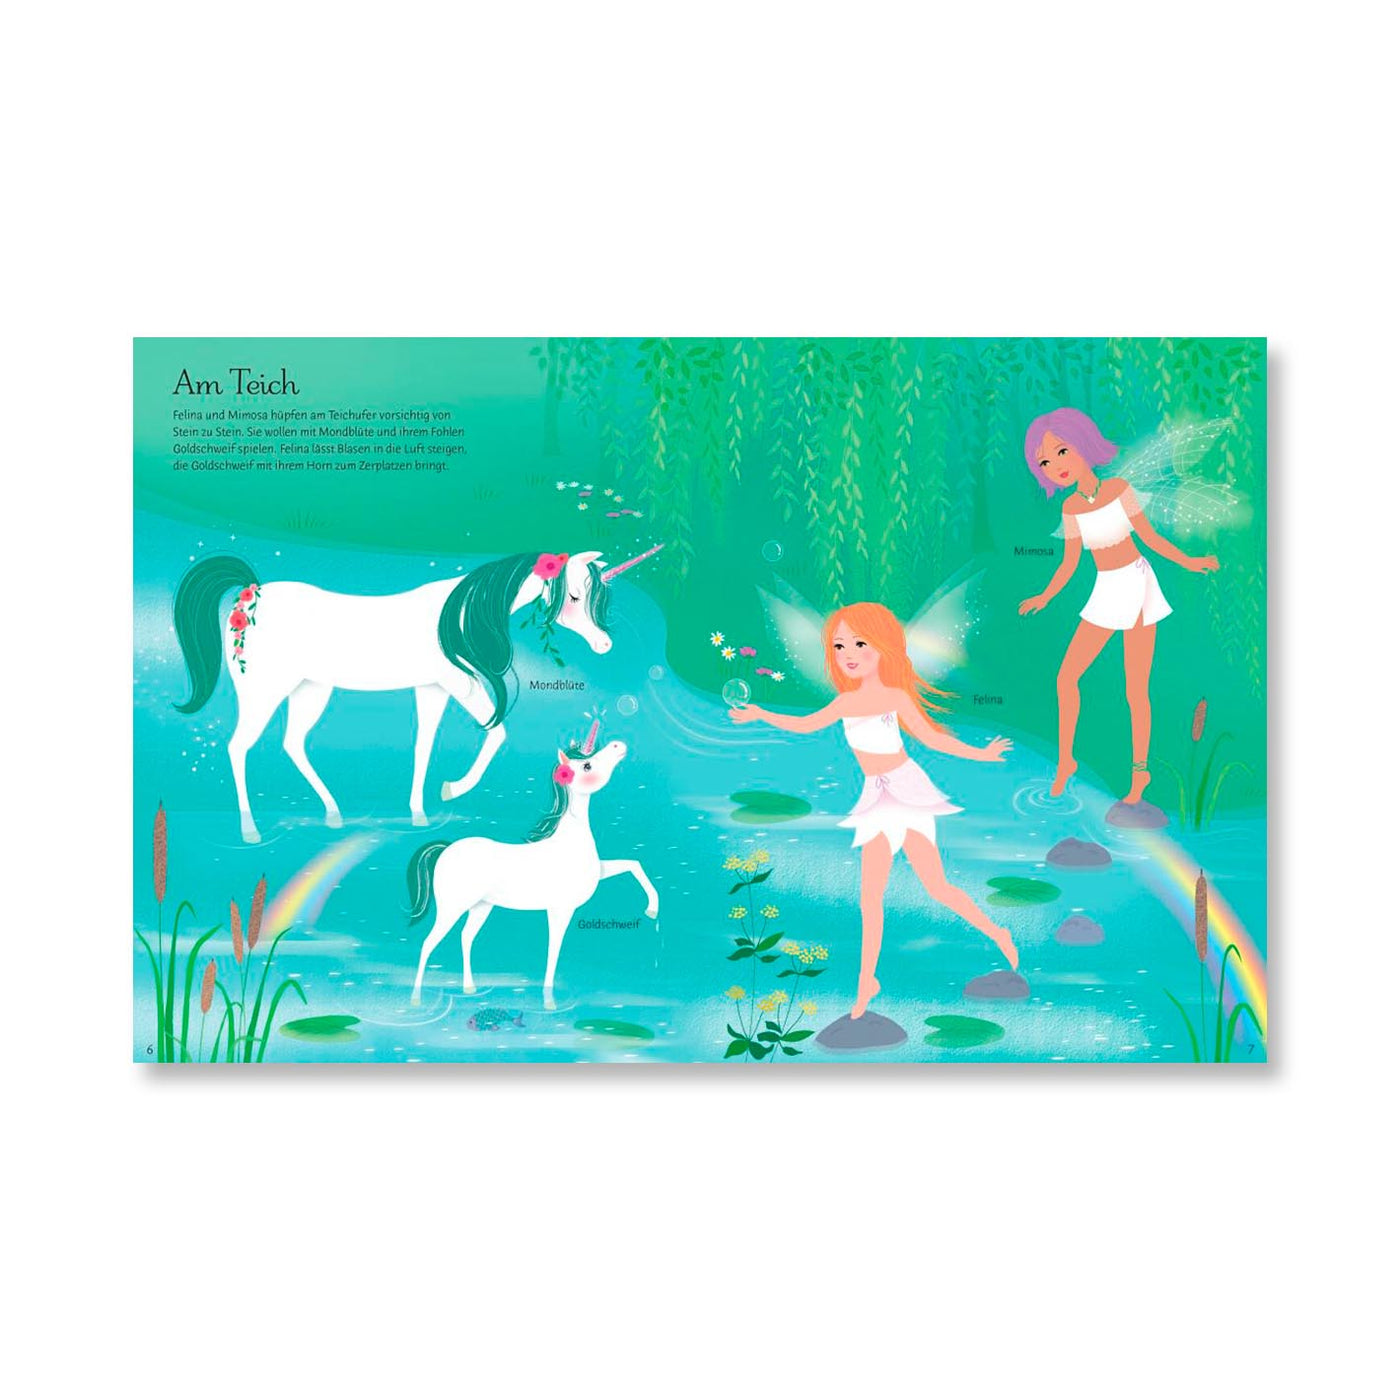 Mein großes Anziehpuppen-Stickerbuch: Einhörner und Meerjungfrauen